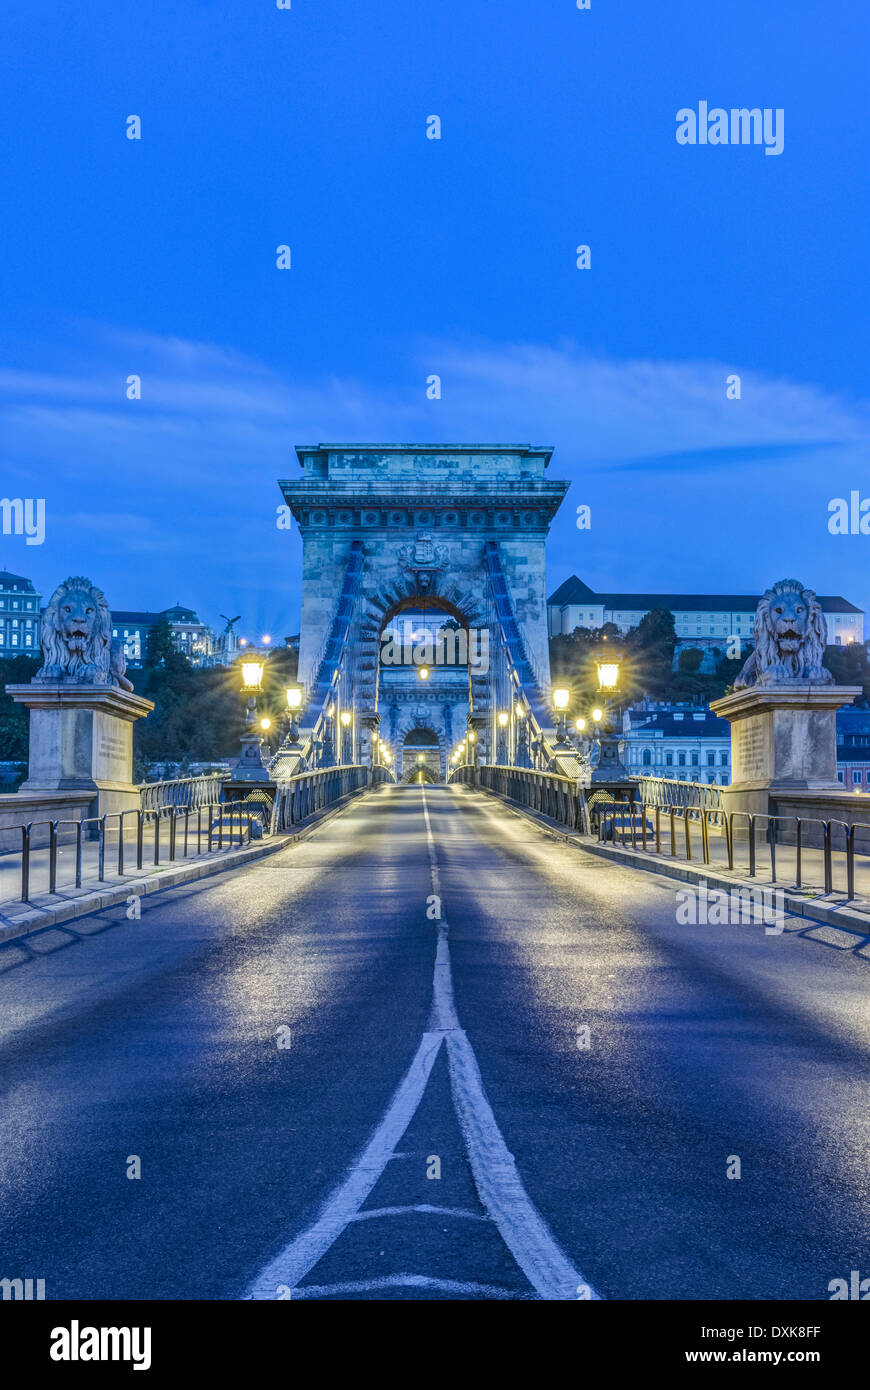 León estatuas iluminadas y lámparas de calle junto al Puente de las cadenas, Budapest, Hungría Foto de stock